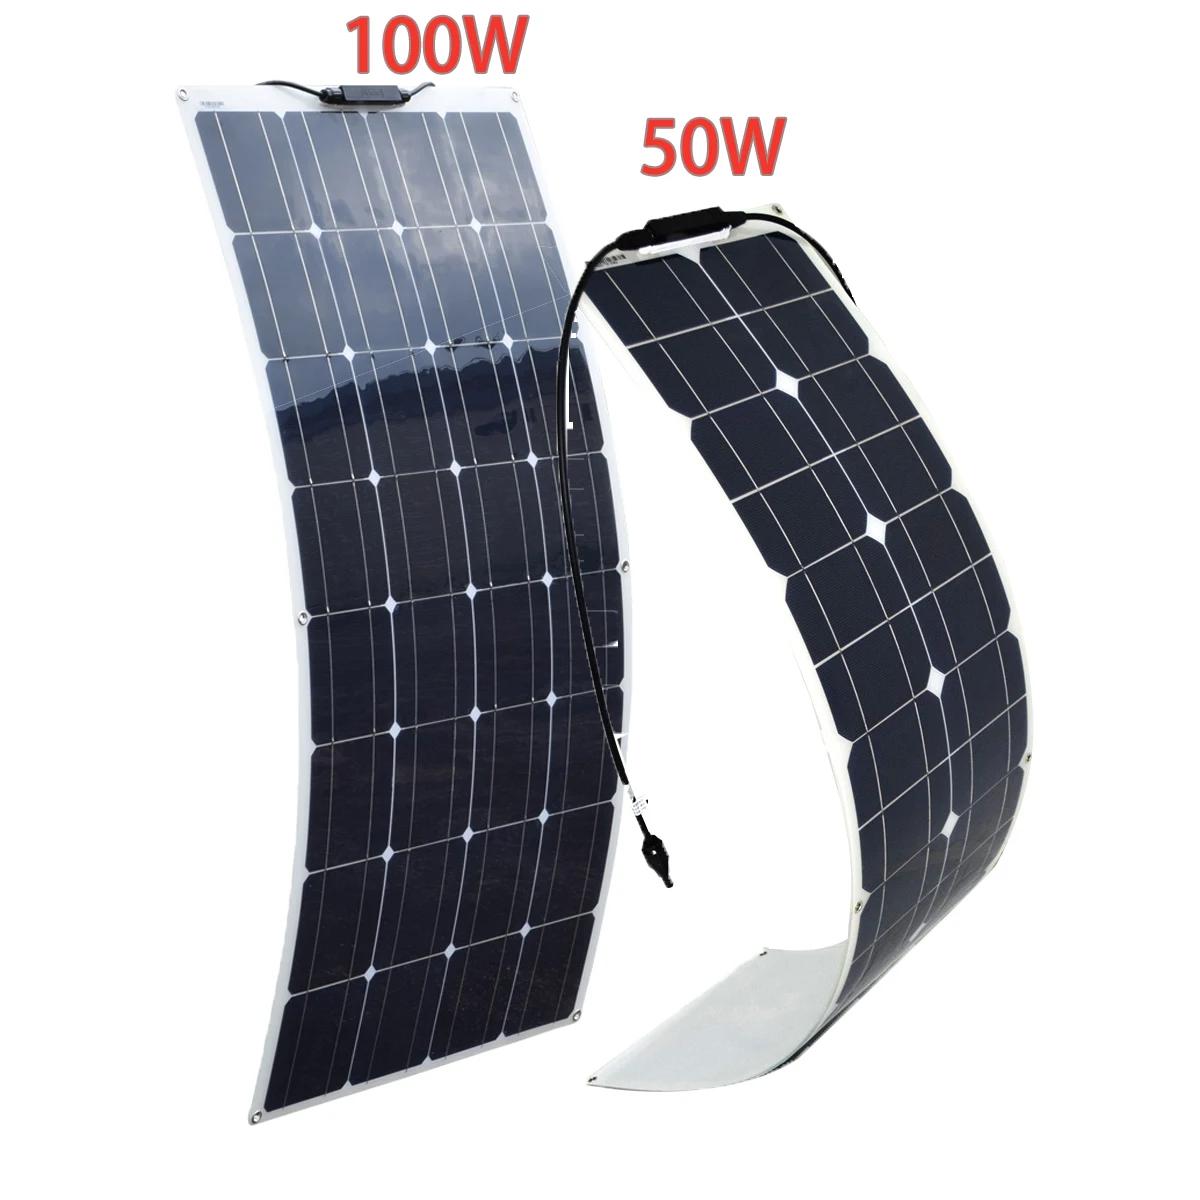 XINPUGUANG Flexible Solar Panel kit  ¾  г  ͸  ý,  Ȩ ķ ڴ  Ÿ, 16V, 100W, 50W, 12V, 24V